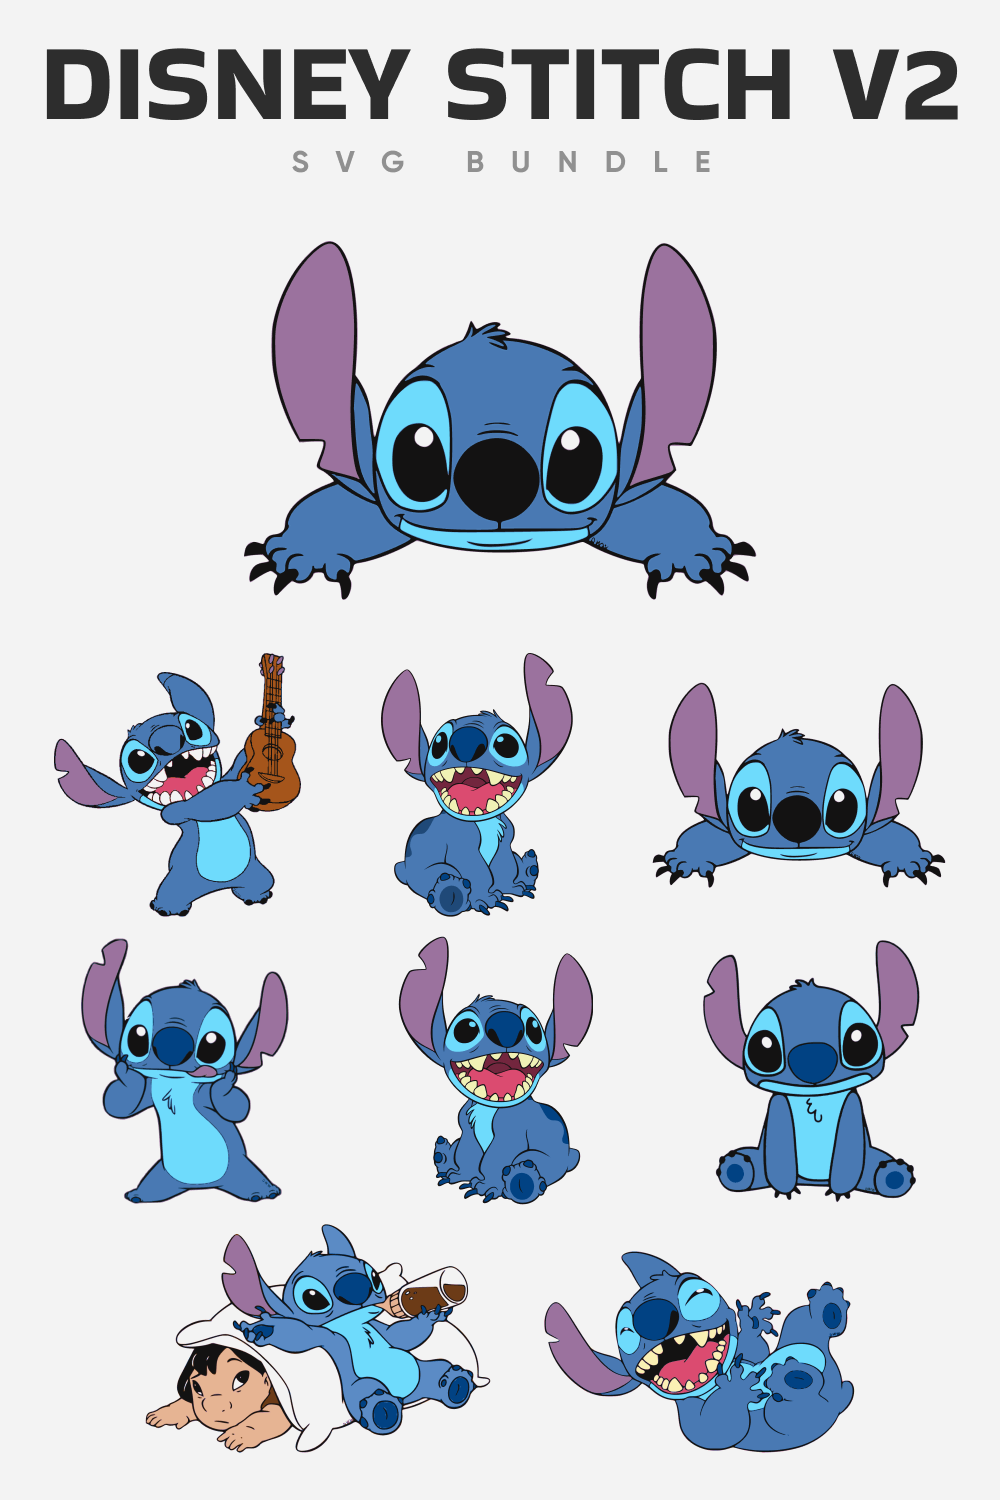 Disney stitch v2 SVG bundle.